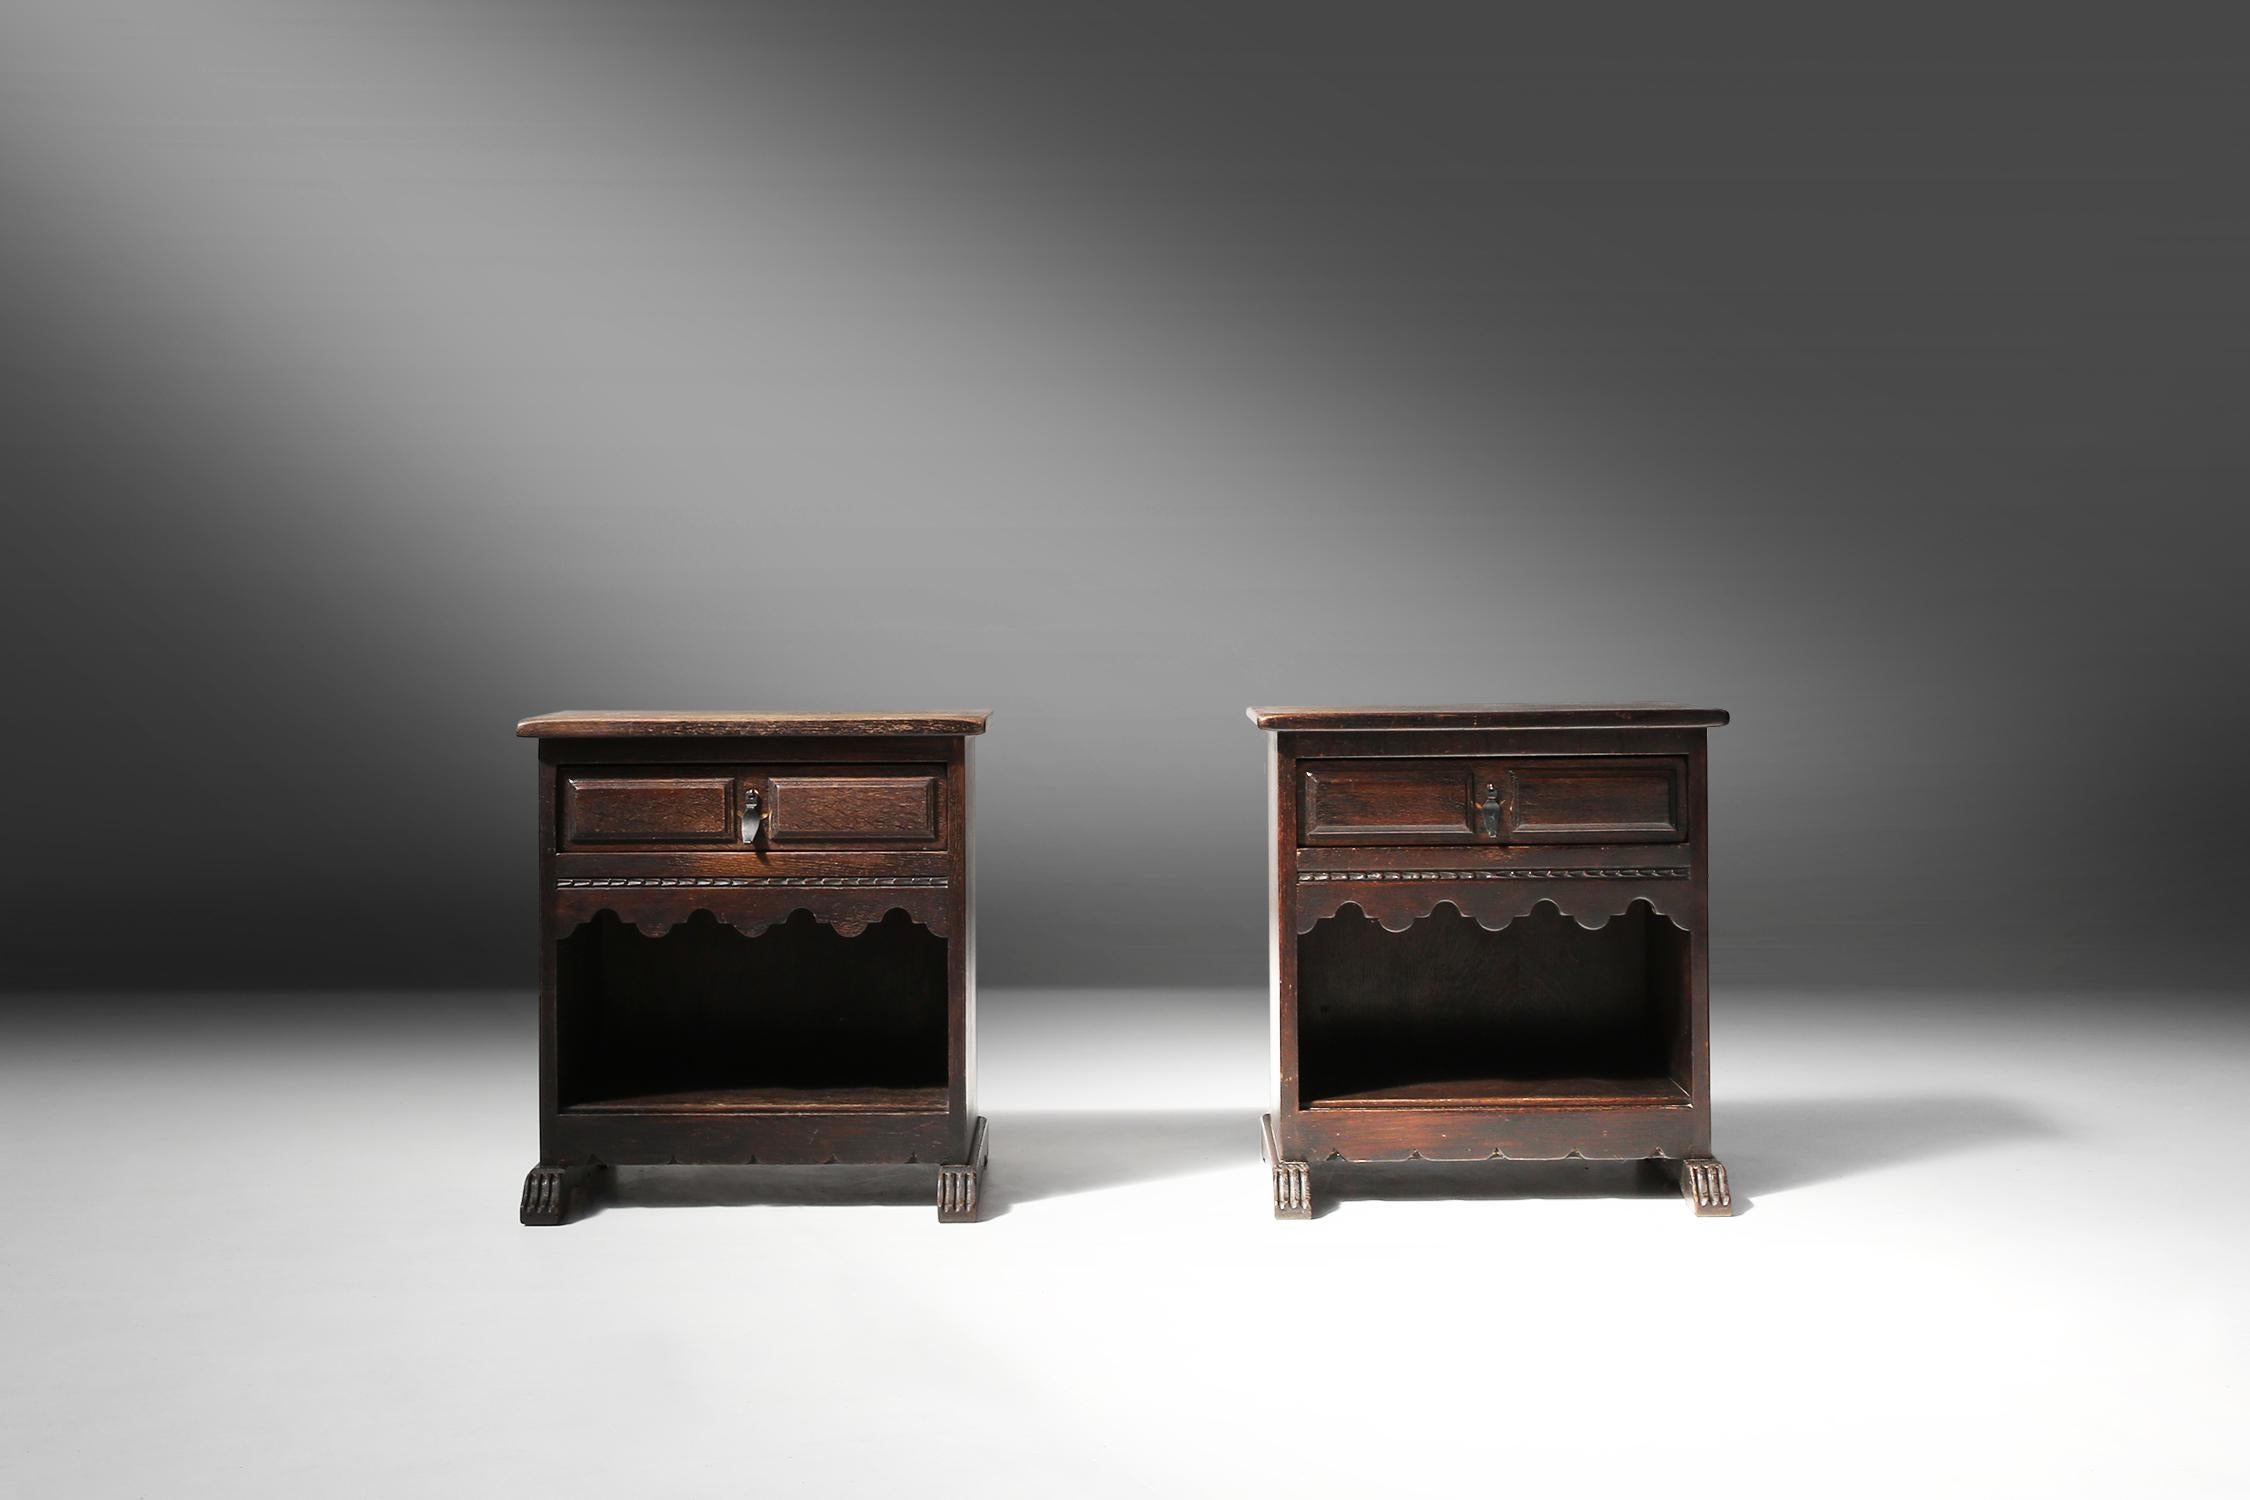 Diese beiden Nachttische sind aus Holz gefertigt und haben eine stilvolle schwarze Farbe. Sie sind in einem rustikalen Stil gestaltet und haben schöne Details wie Schmiedeeisen am Griff und handgeschnitzte Details im Holz. Diese Nachttische sind